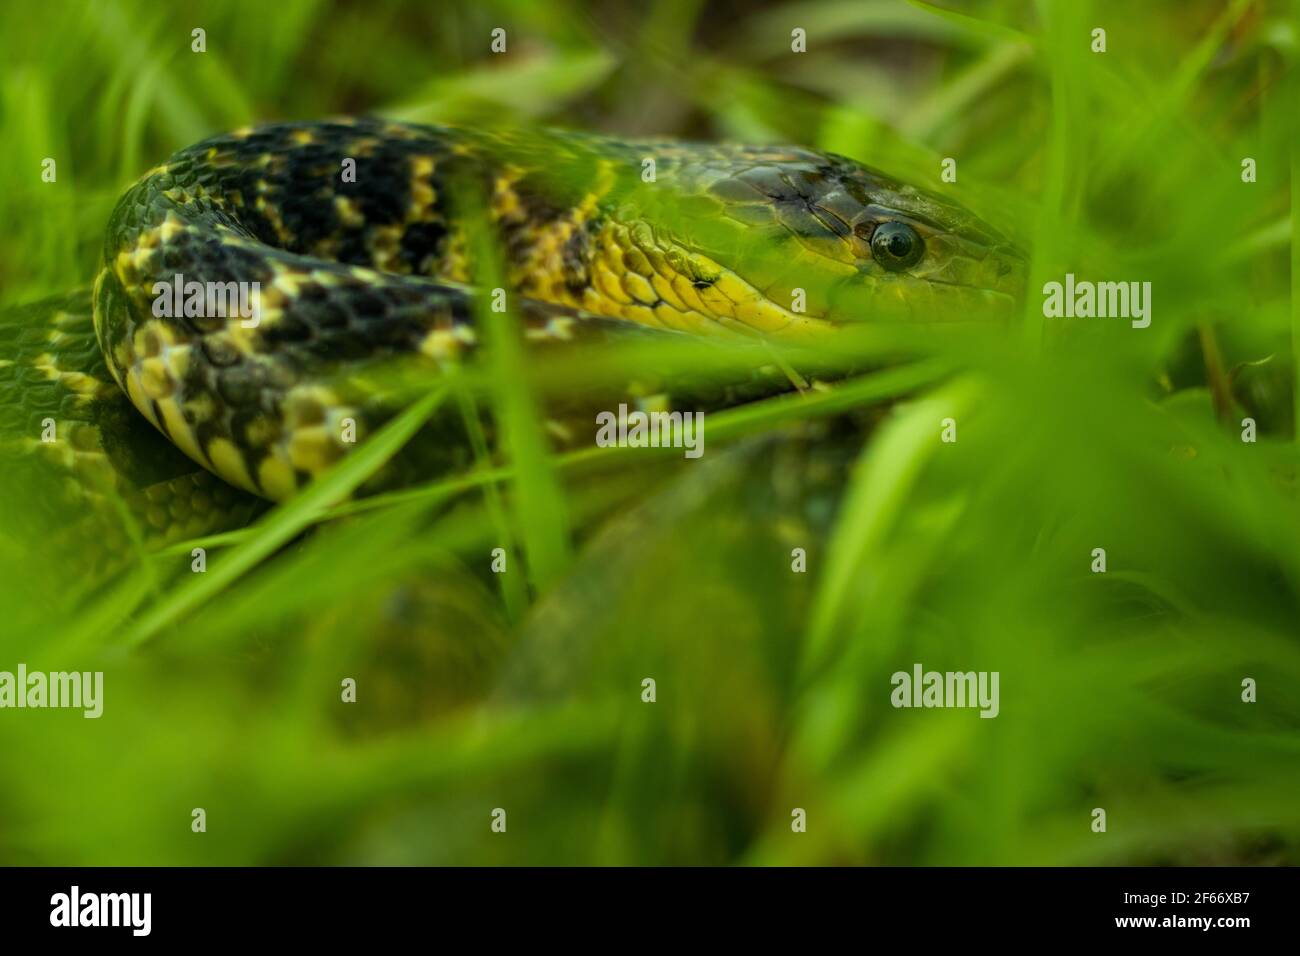 Amphibiesma stolatum es el nombre de una especie, parte del género  Amphibiesma. El buff rayó la serpiente de espalda de quilla sentada  redondeada en el verde hierba ocultar y Fotografía de stock -